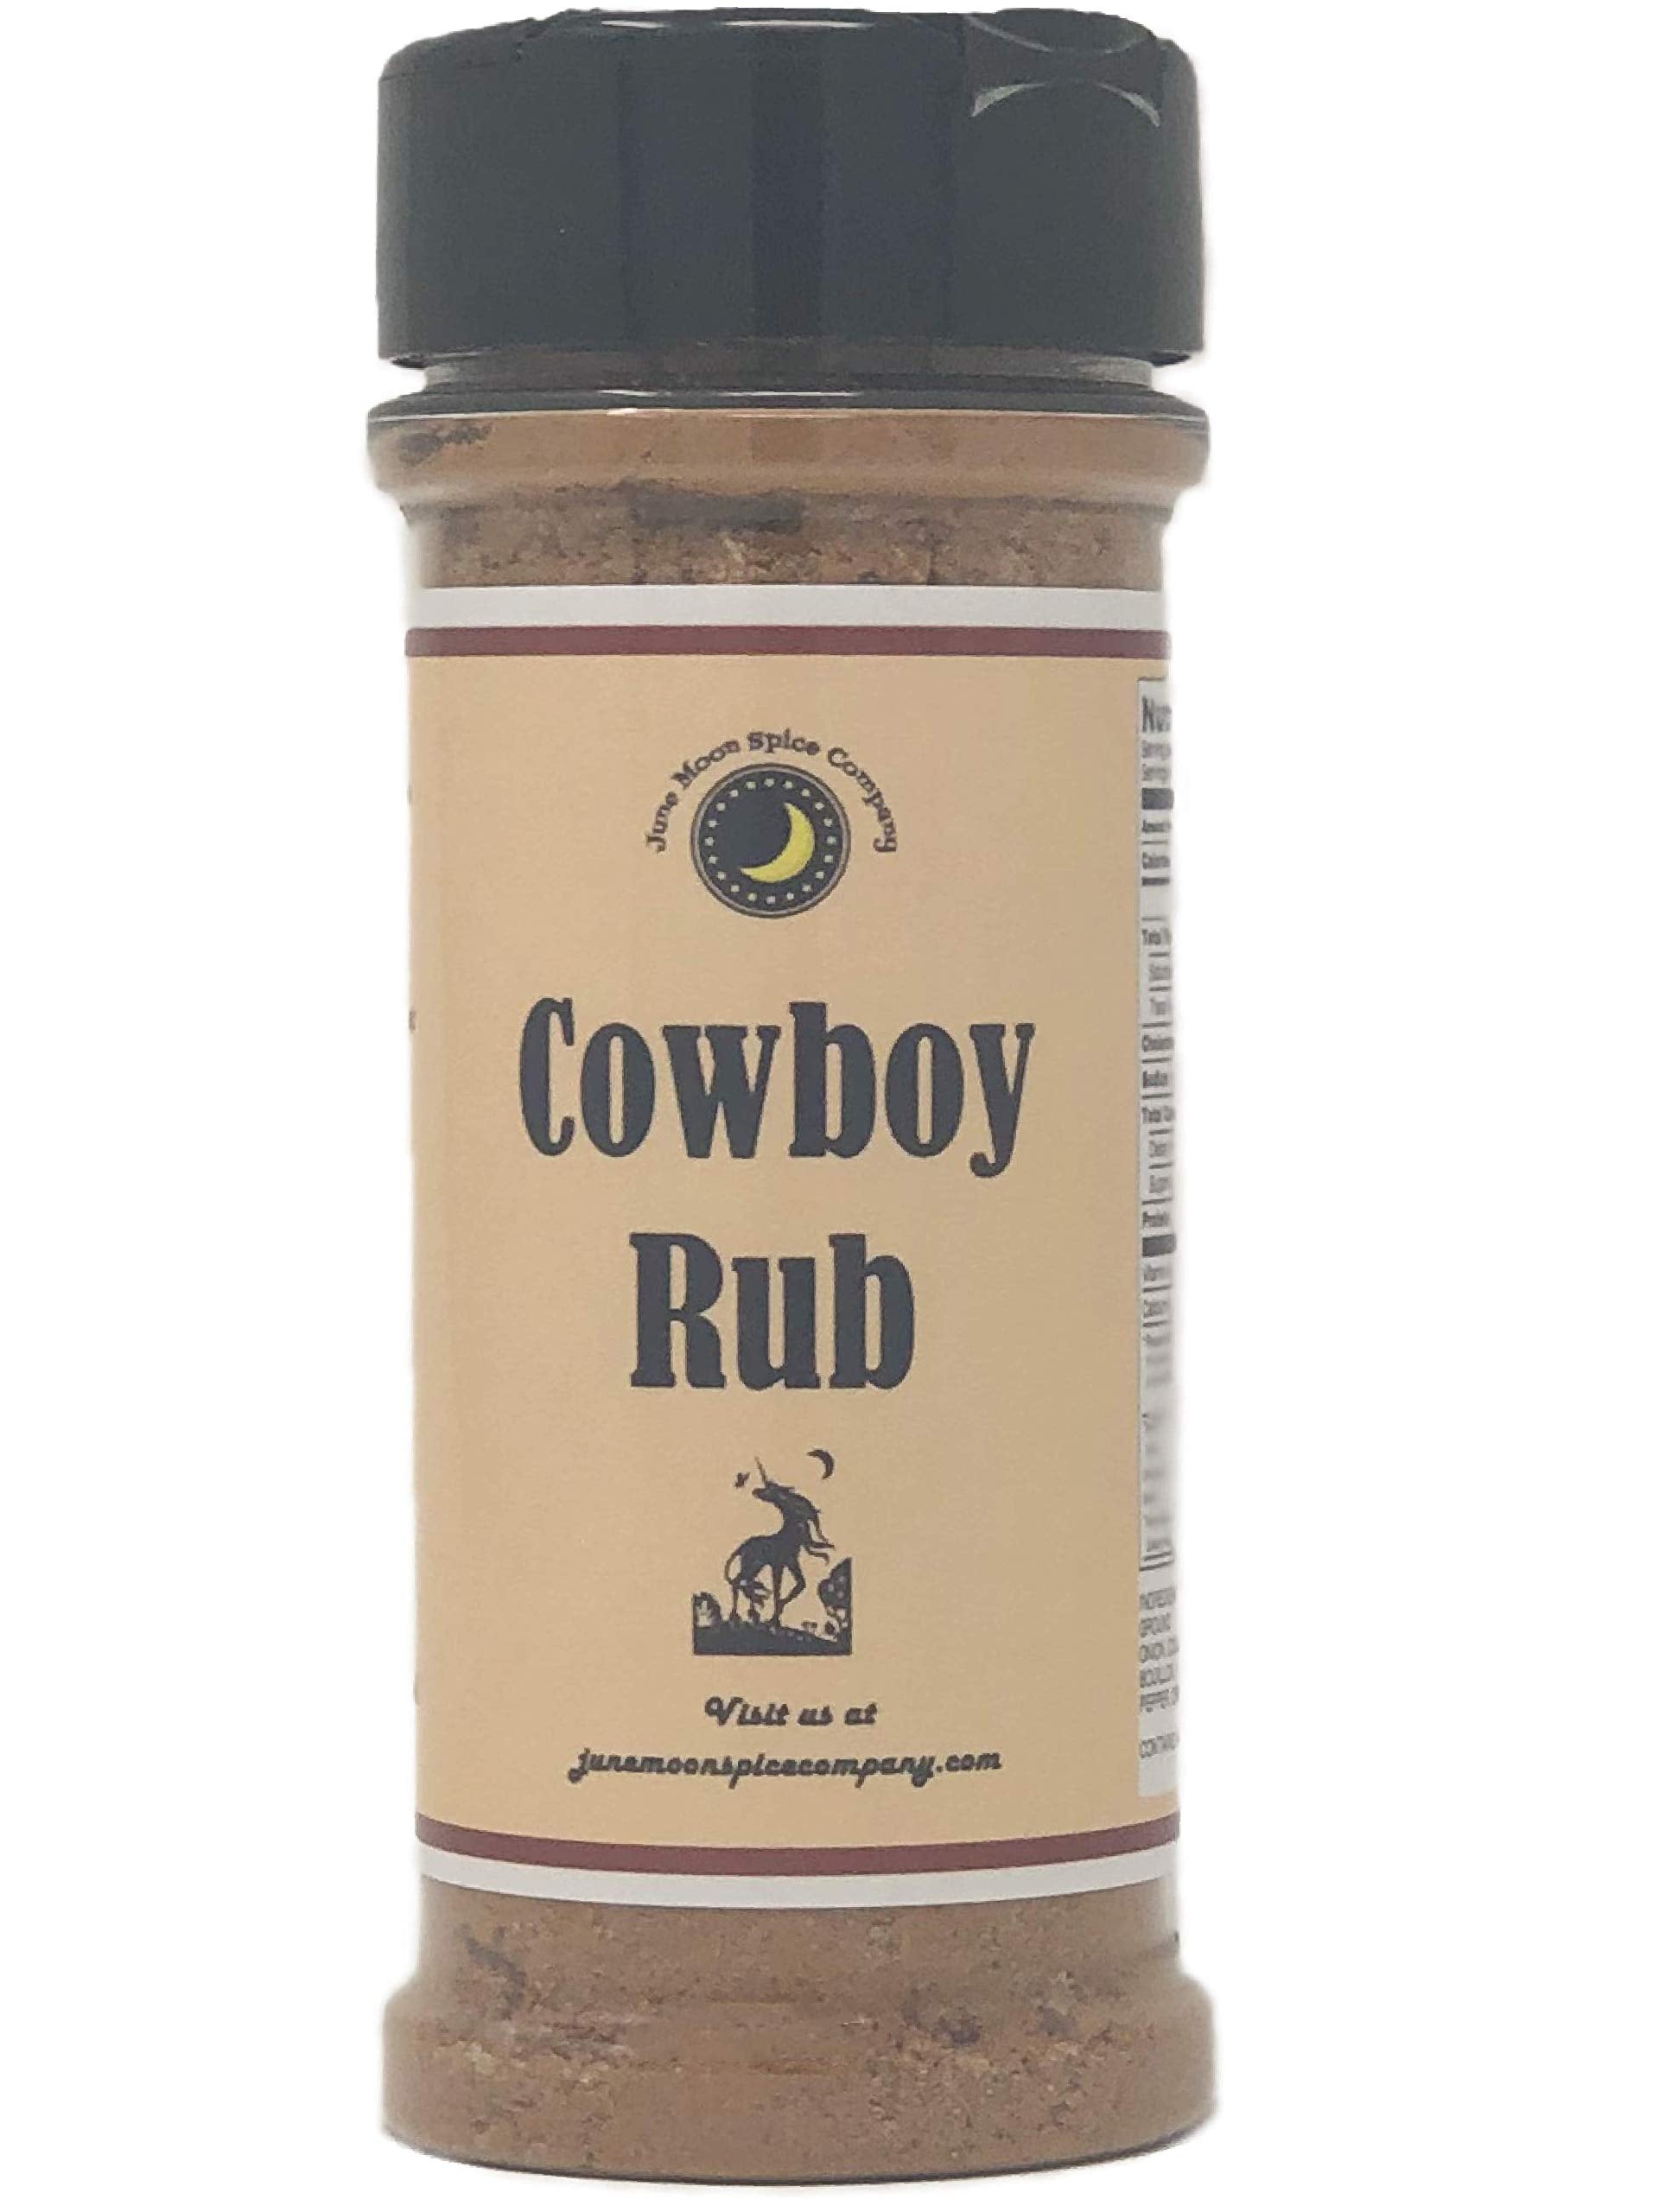 Cowboy Rub Steak Dry Rub Seasoning